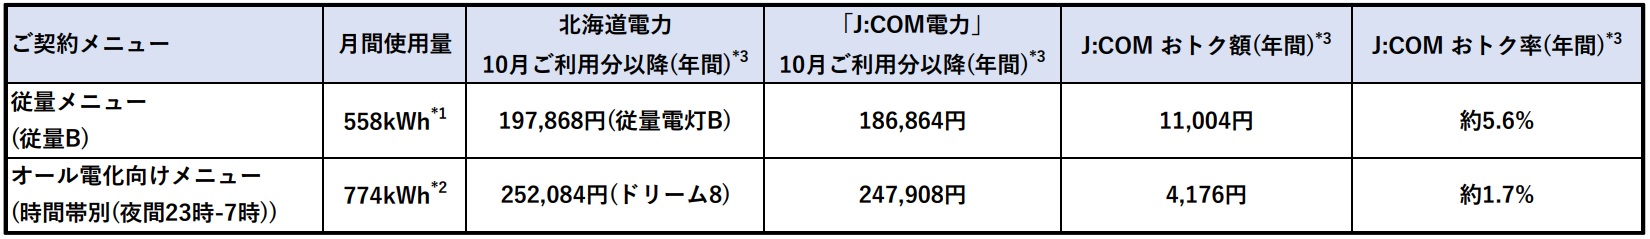 札幌 関西 下関エリアにおける J Com 電力 の料金値下げについて J Comのプレスリリース